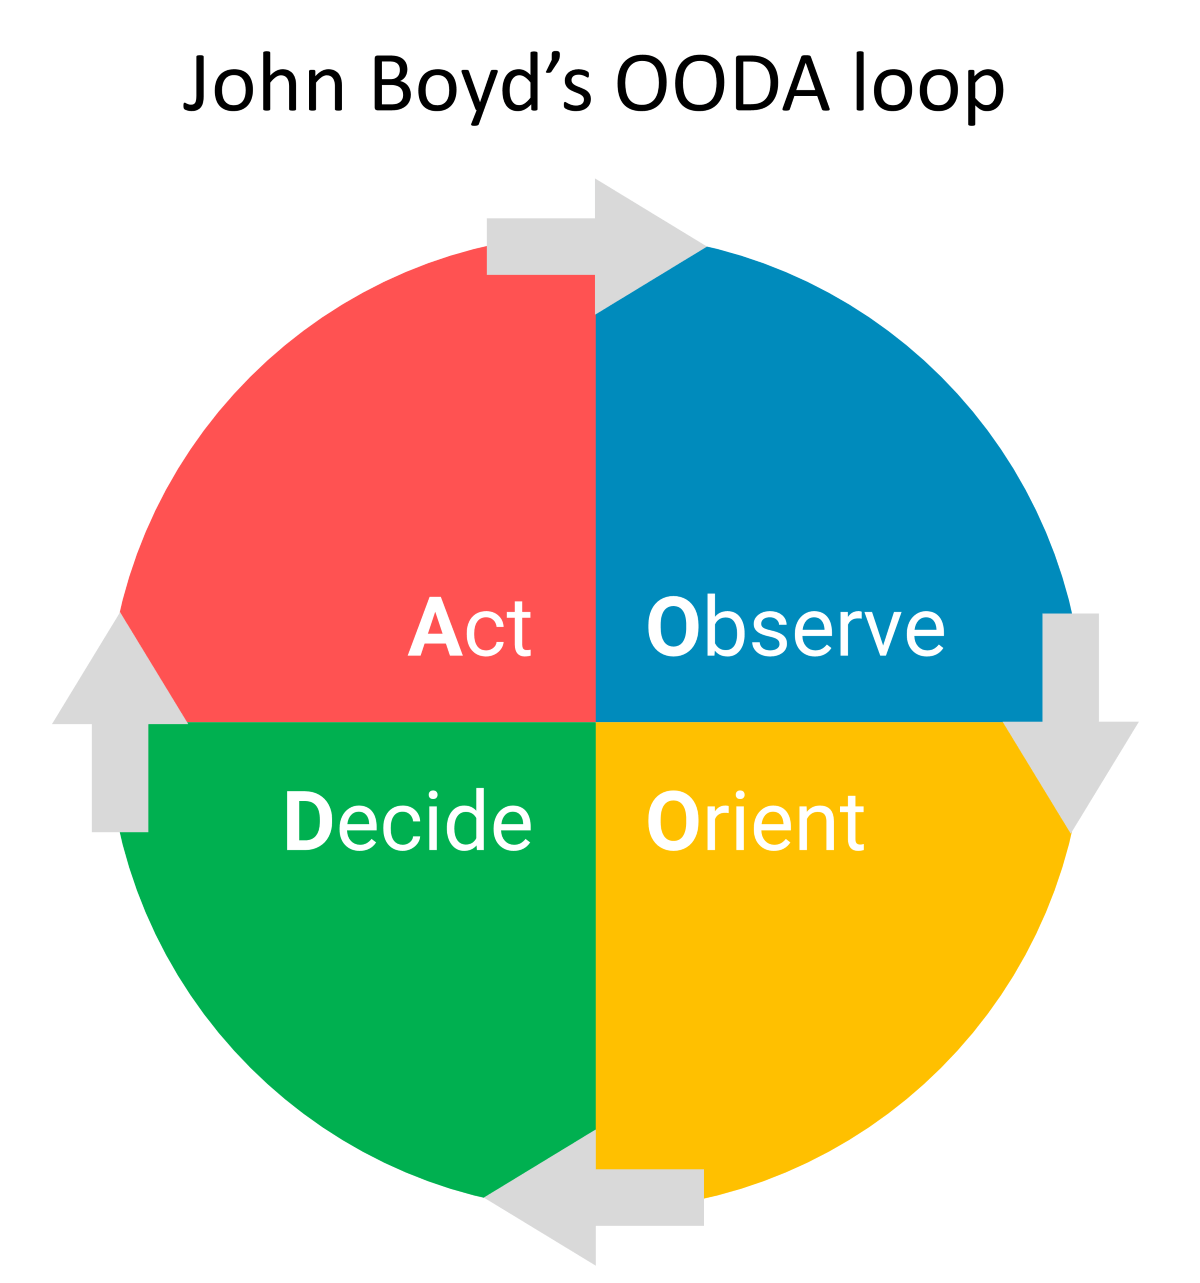 John Boyds' OODA loop